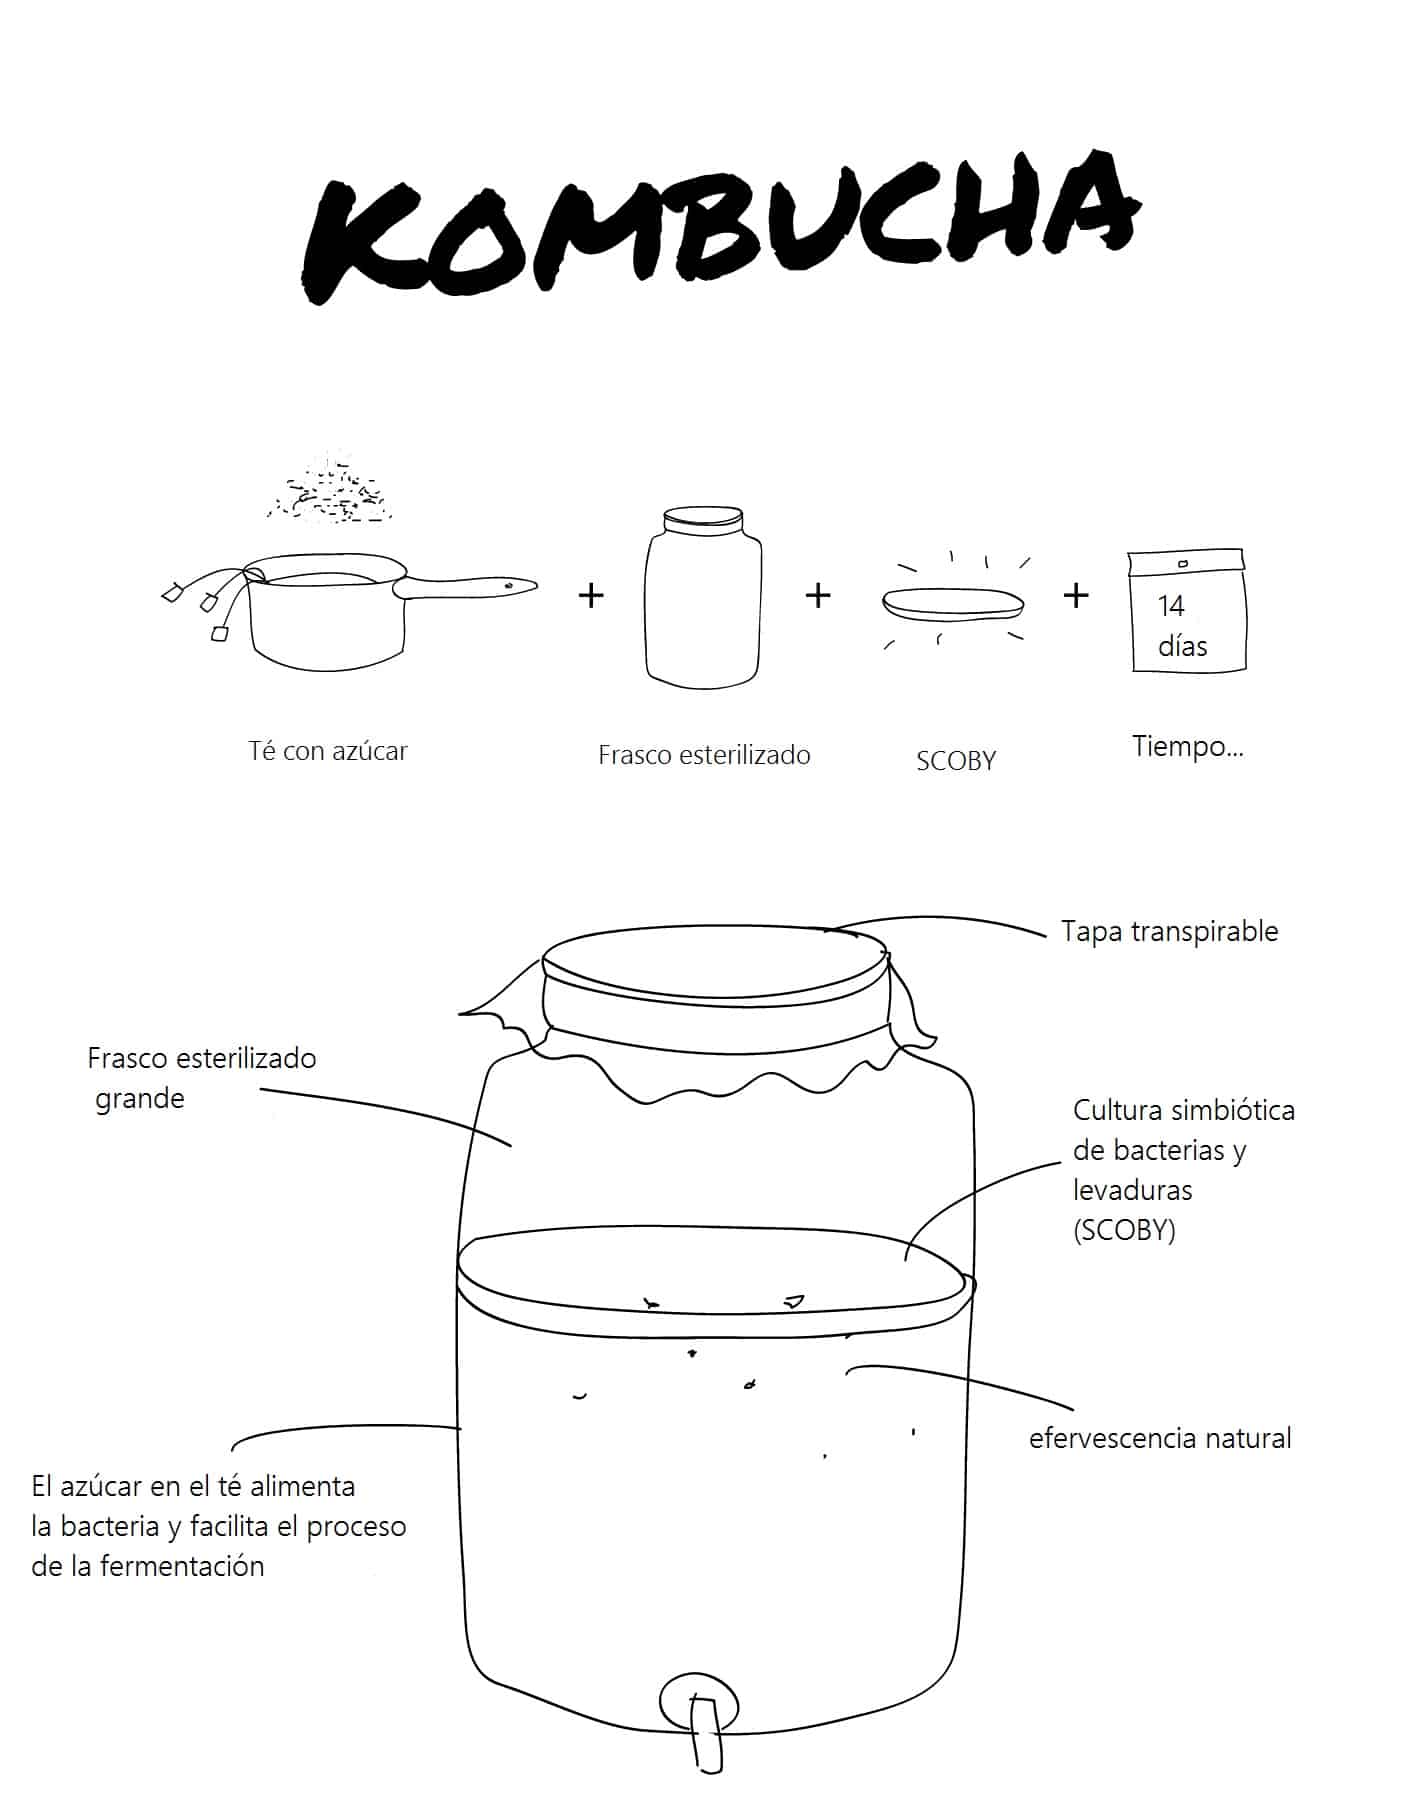 Kombucha: cómo se prepara (primera parte)